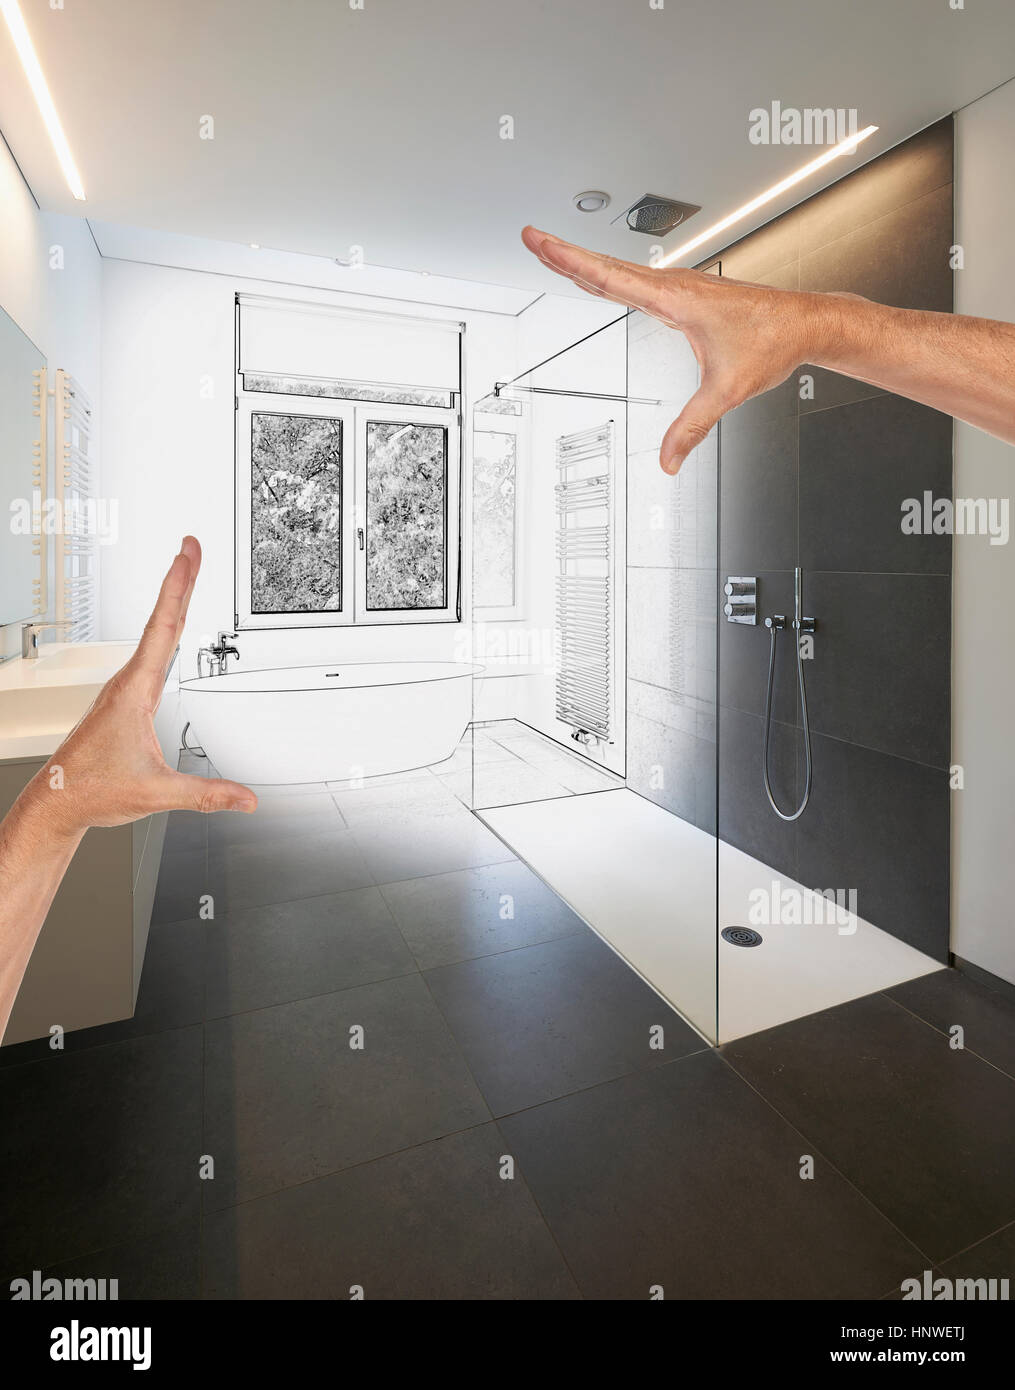 Geplante Sanierung ein modernes Luxus-Bad, Badewanne in Corian, Wasserhahn  und Dusche im Badezimmer mit Fenster zum Garten Stockfotografie - Alamy